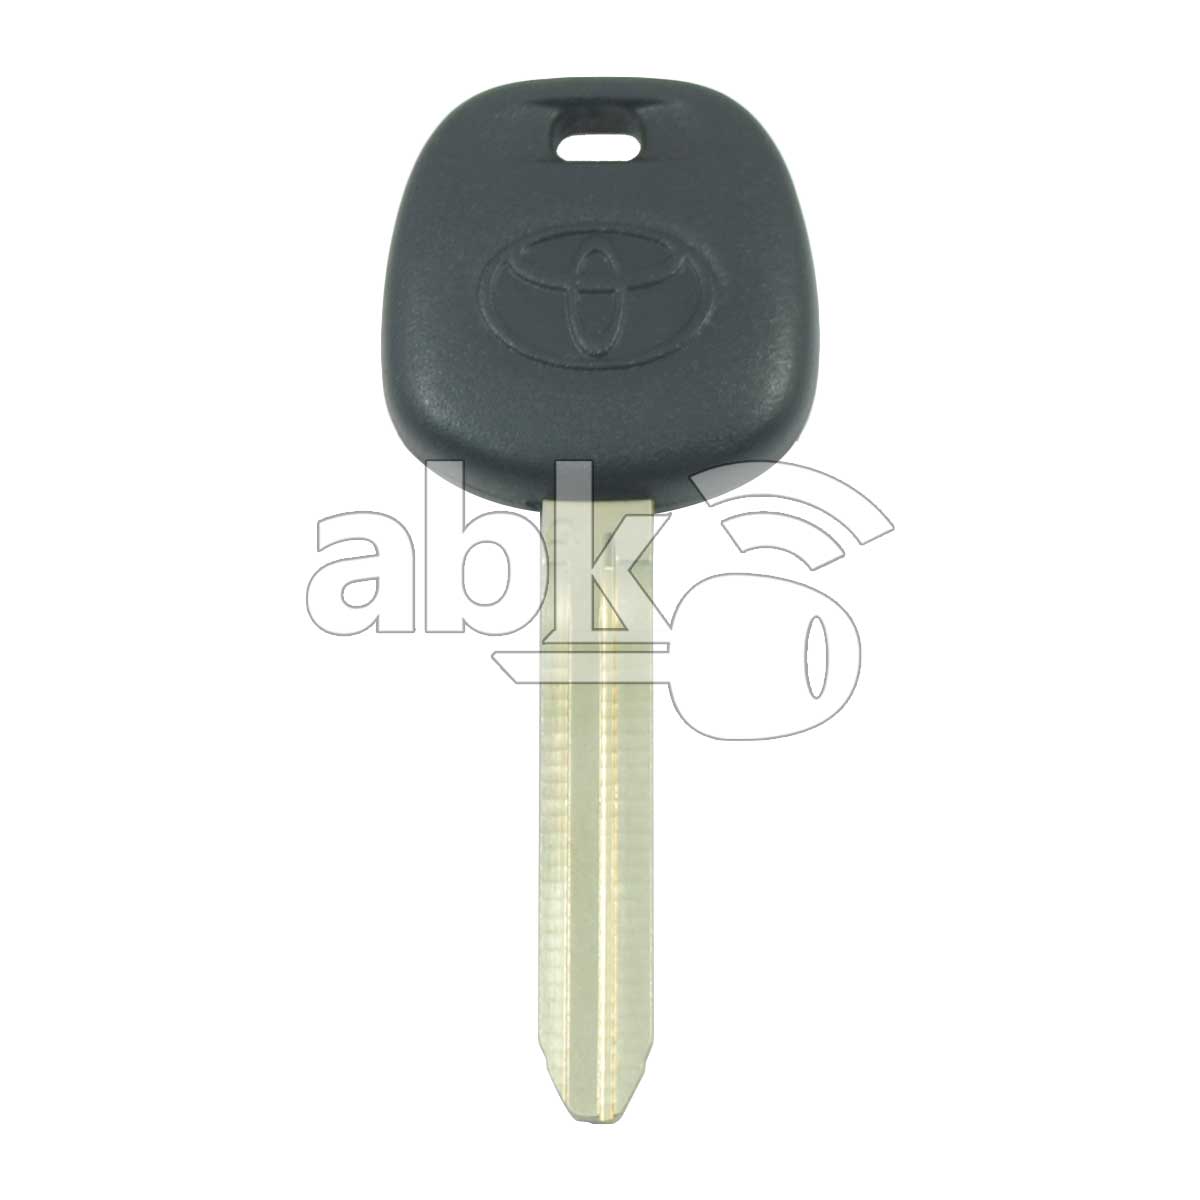 Genuine Toyota Transponder Key 4D-72-G TOY43 89785-08040 89785-60210 - ABK-1360 - ABKEYS.COM